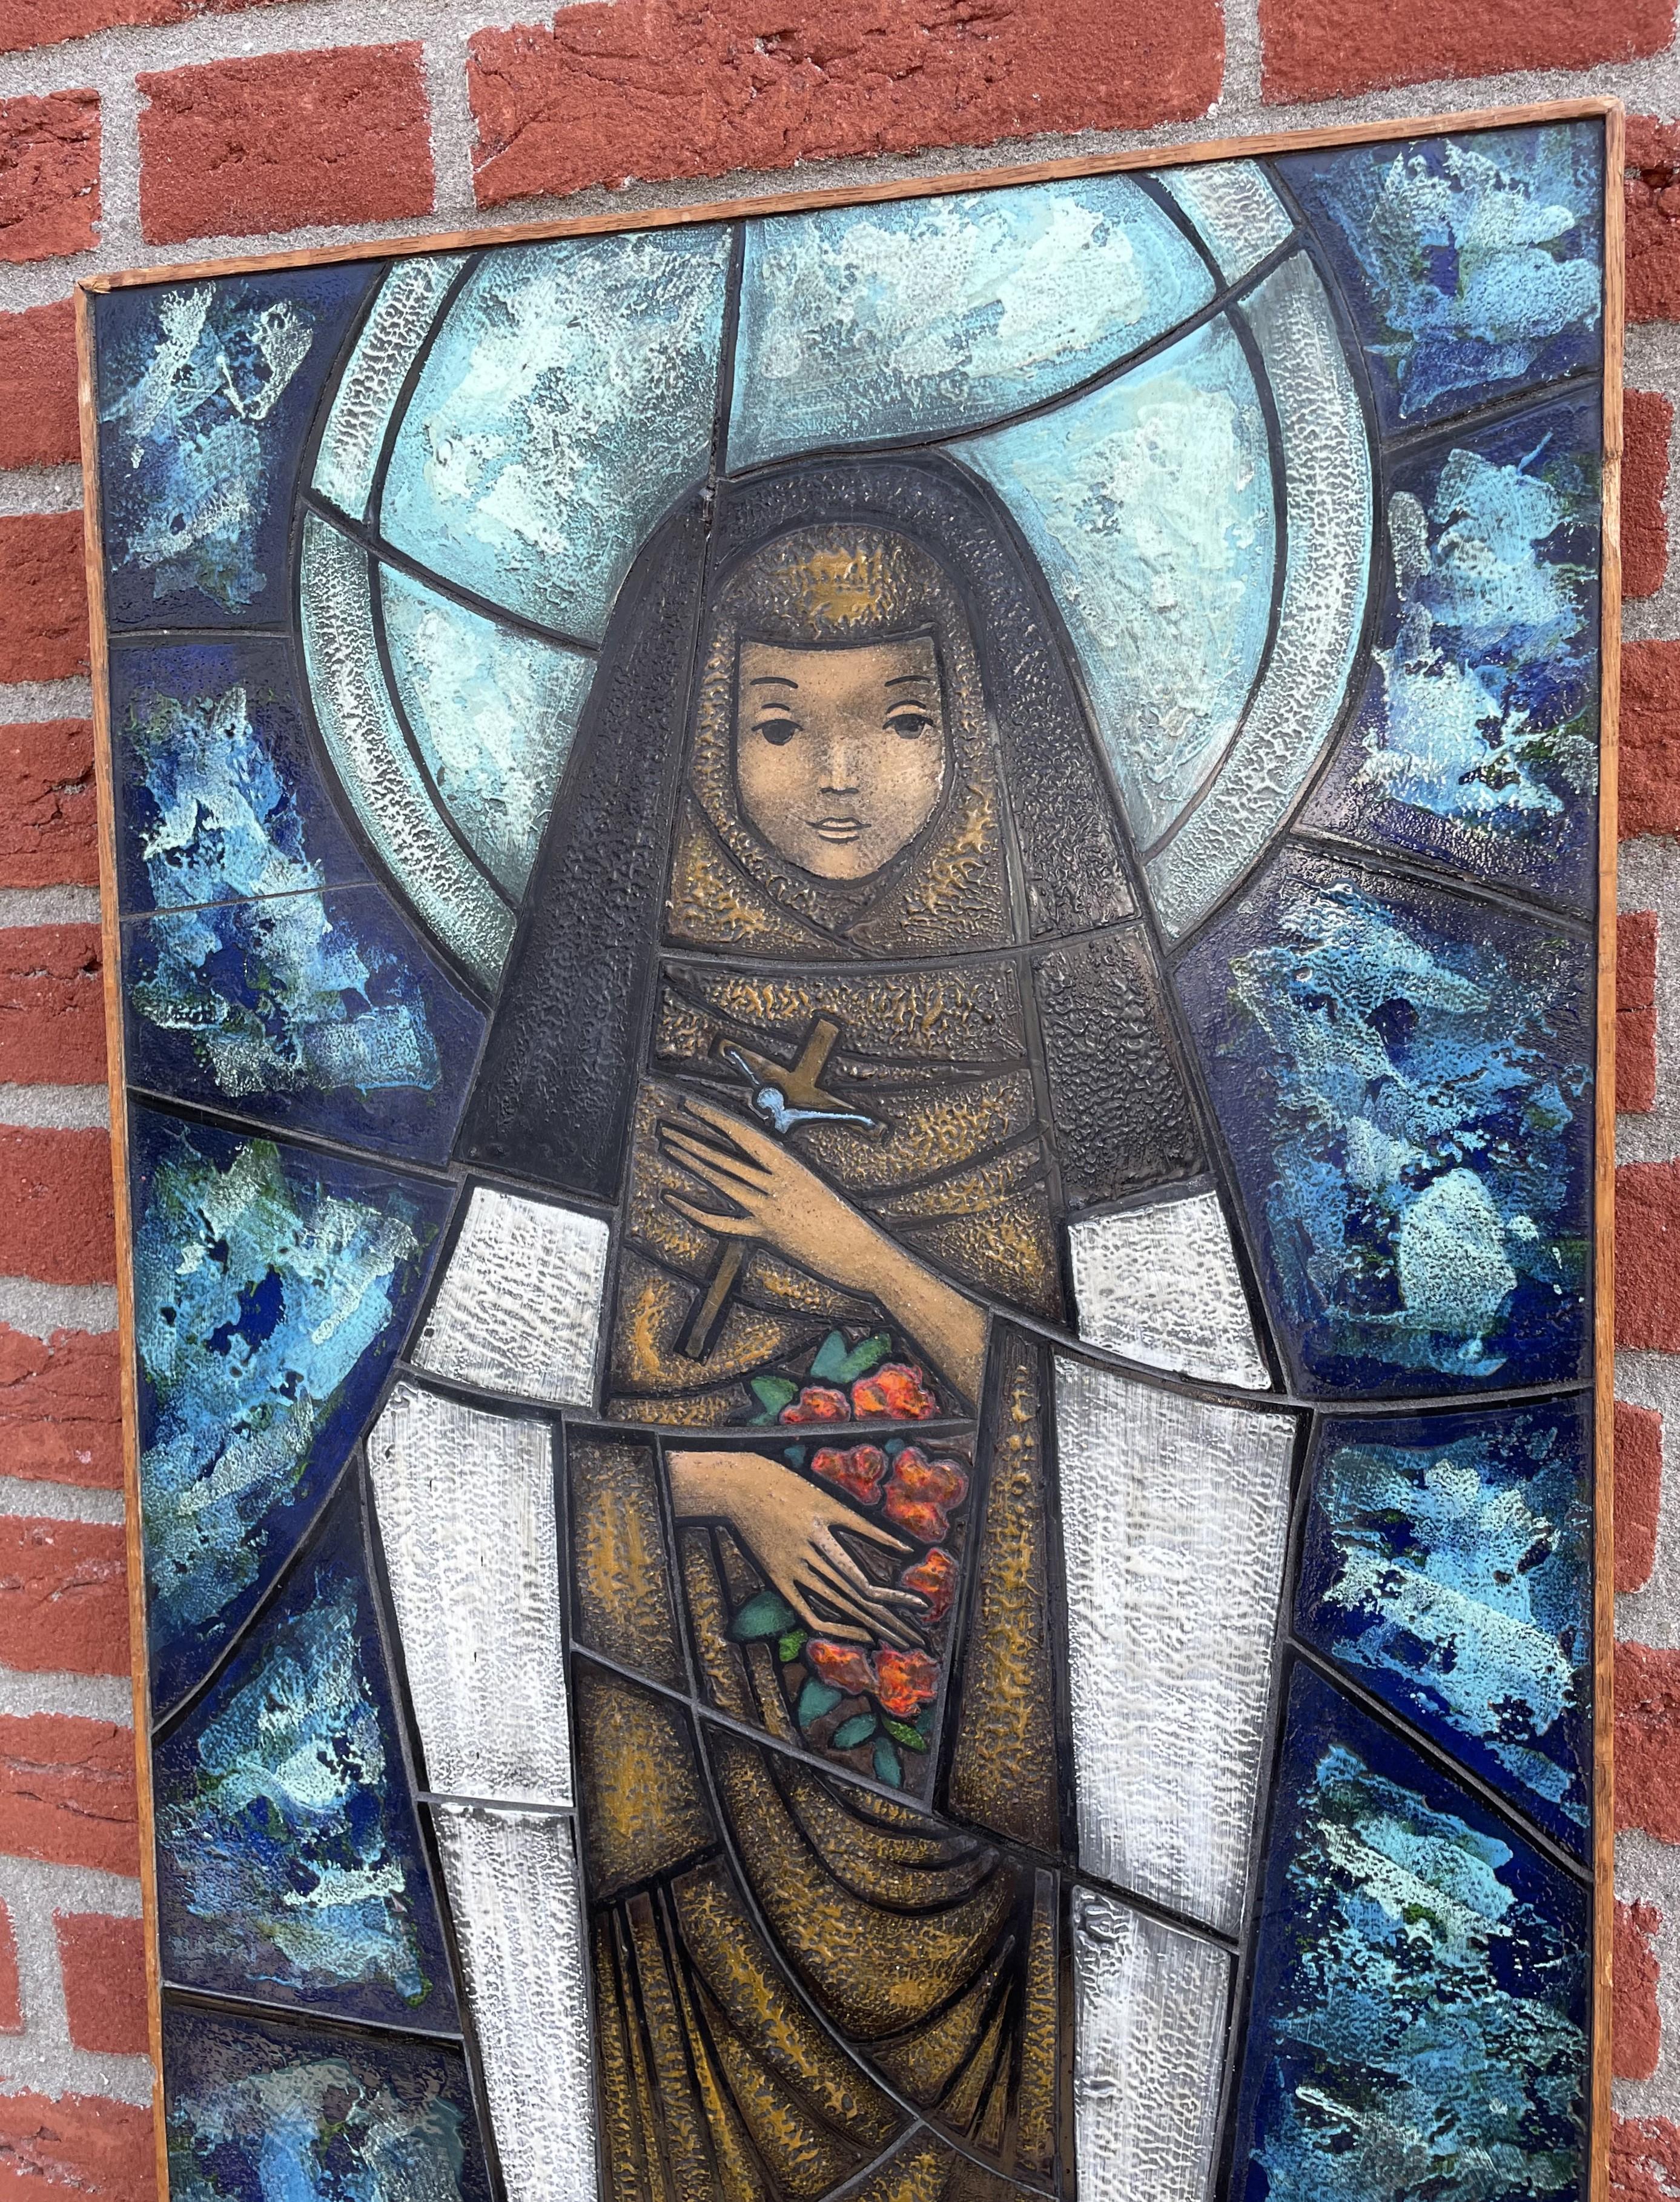 Atemberaubendes, einzigartiges, lebendiges und bedeutungsvolles religiöses Kunstwerk.

Die heilige Thérèse von Lisieux (1873-1897) ist die Schutzpatronin Frankreichs und auch als heilige Thérèse vom Kinde Jesu und dem Heiligen Antlitz bekannt. Sie